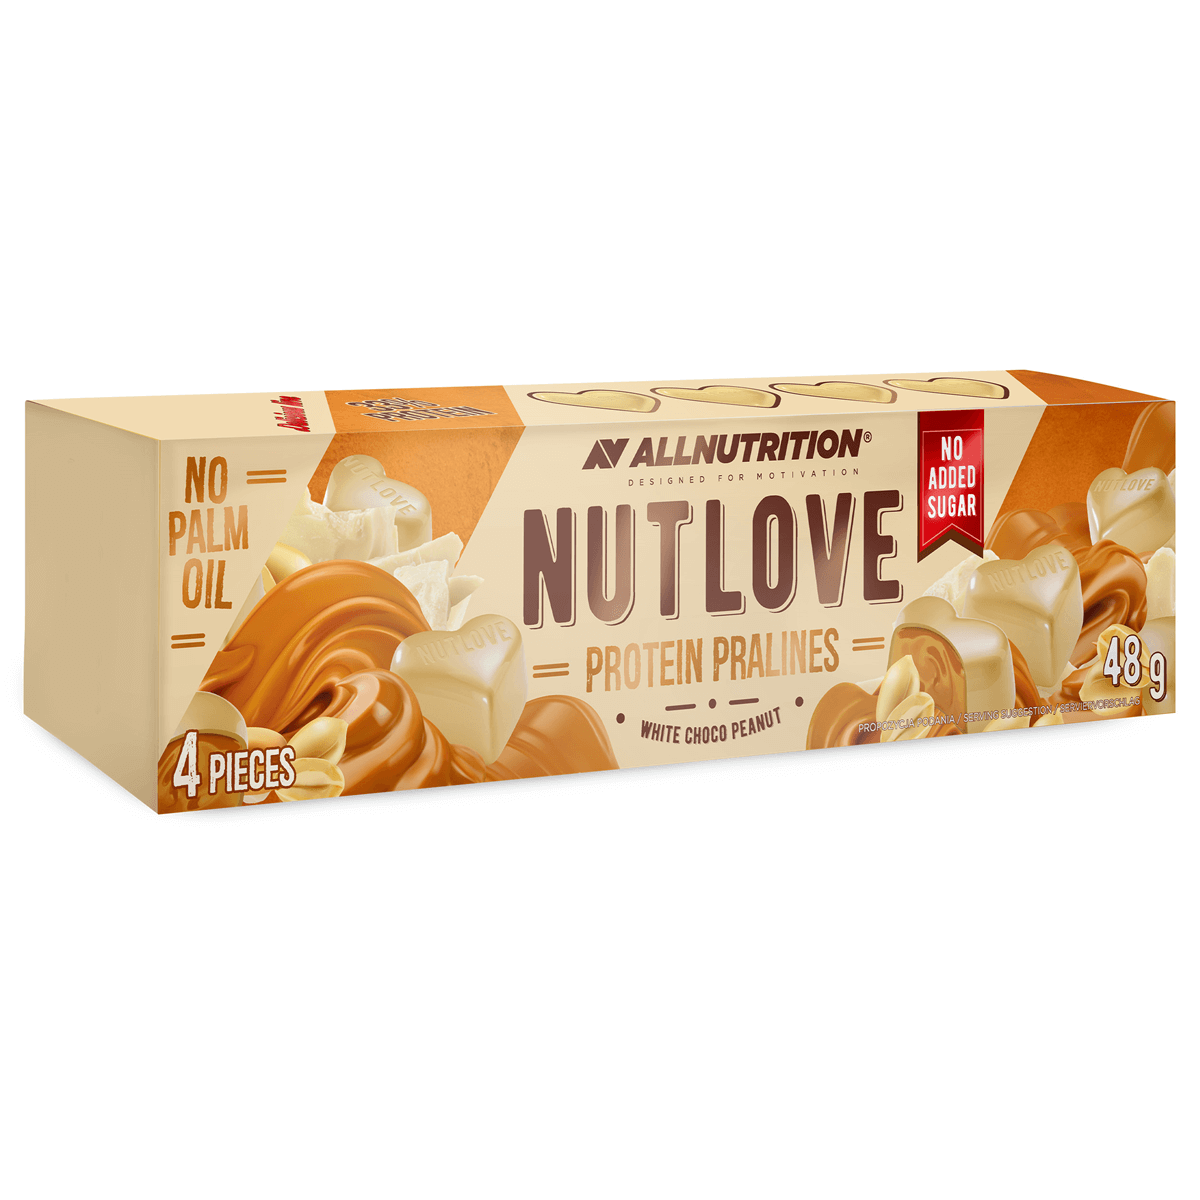 Läs mer om AllNutrition NutLove Protein Praliner - White Choco Peanuts 48g